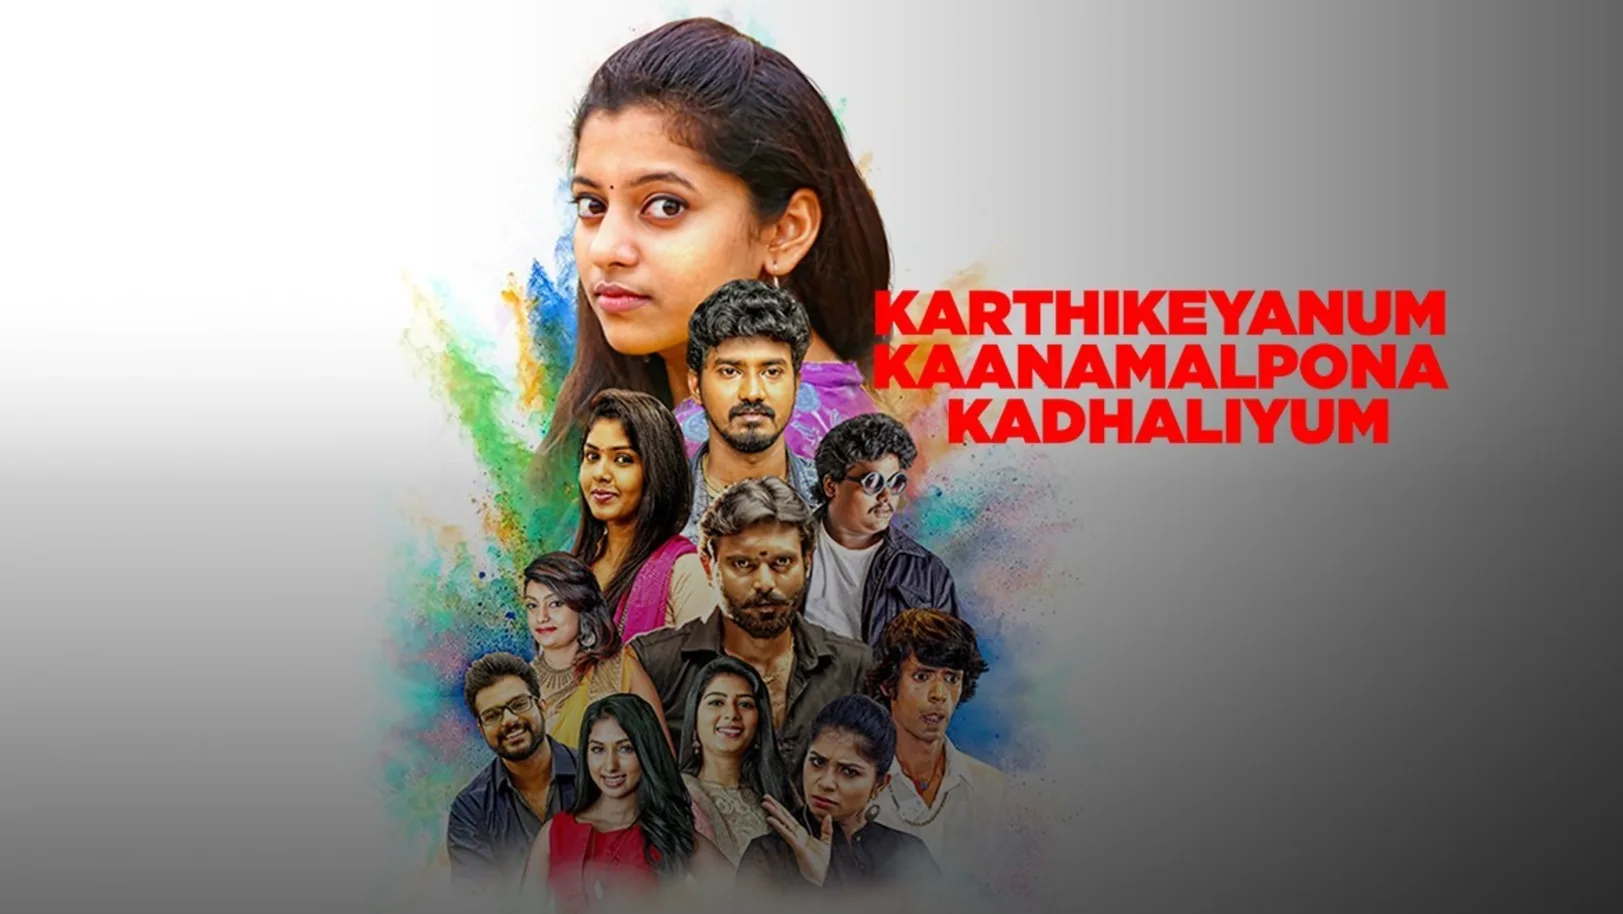 Karthikeyanum Kaanamal Pona Kadhaliyum Movie